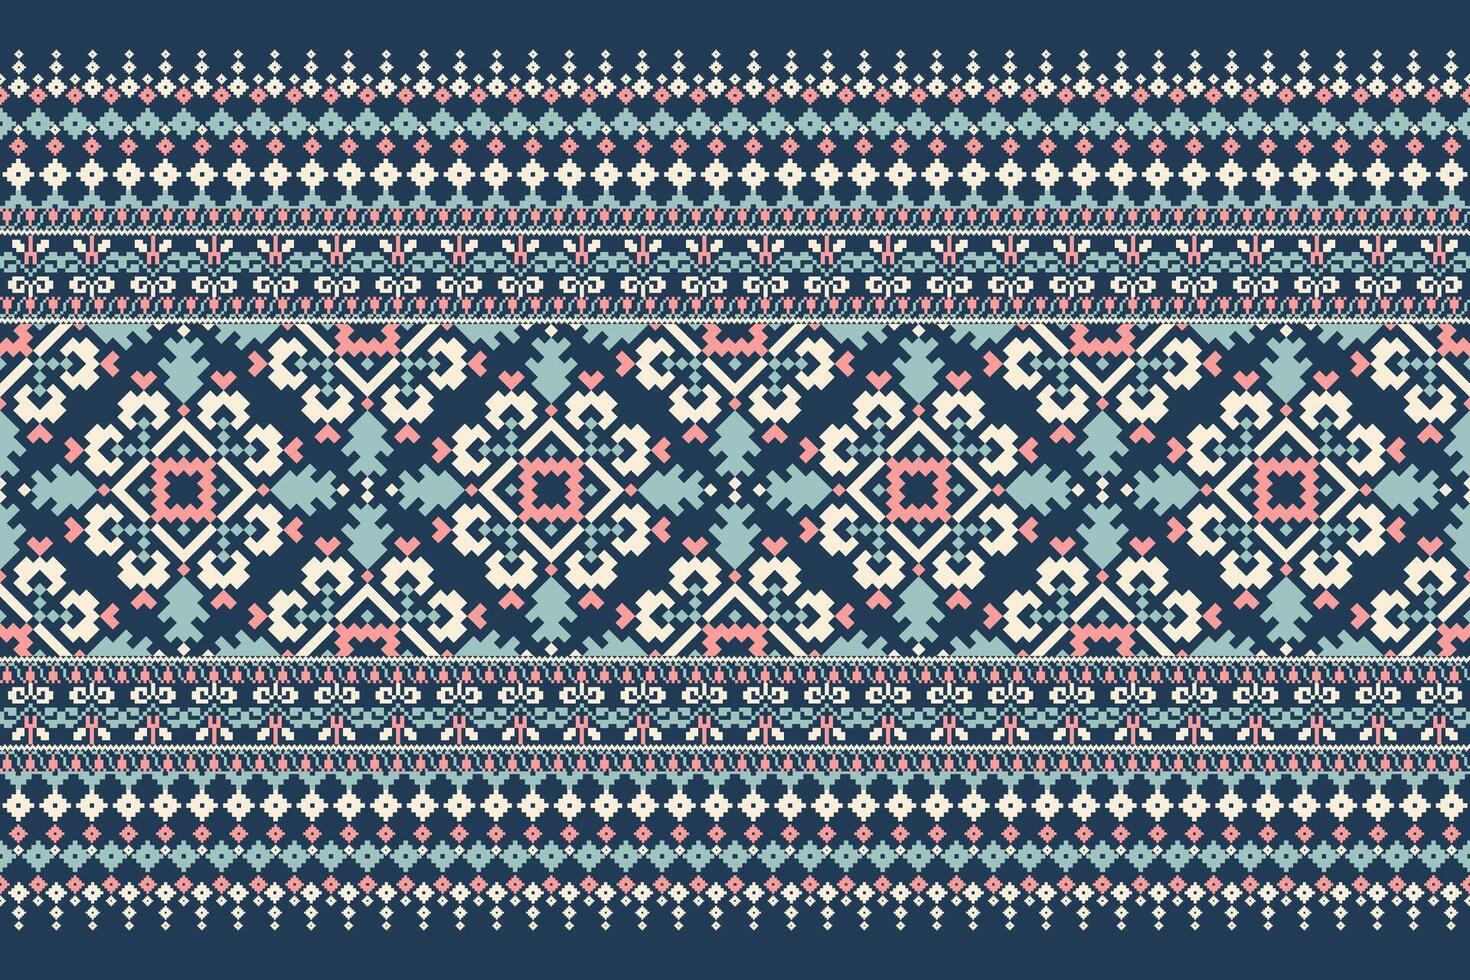 floral cruzar puntada bordado en Armada azul fondo.geometrico étnico oriental modelo vector ilustración, azteca estilo, abstracto fondo.diseño para textura,tela,ropa,decoración,pareo,bufanda.